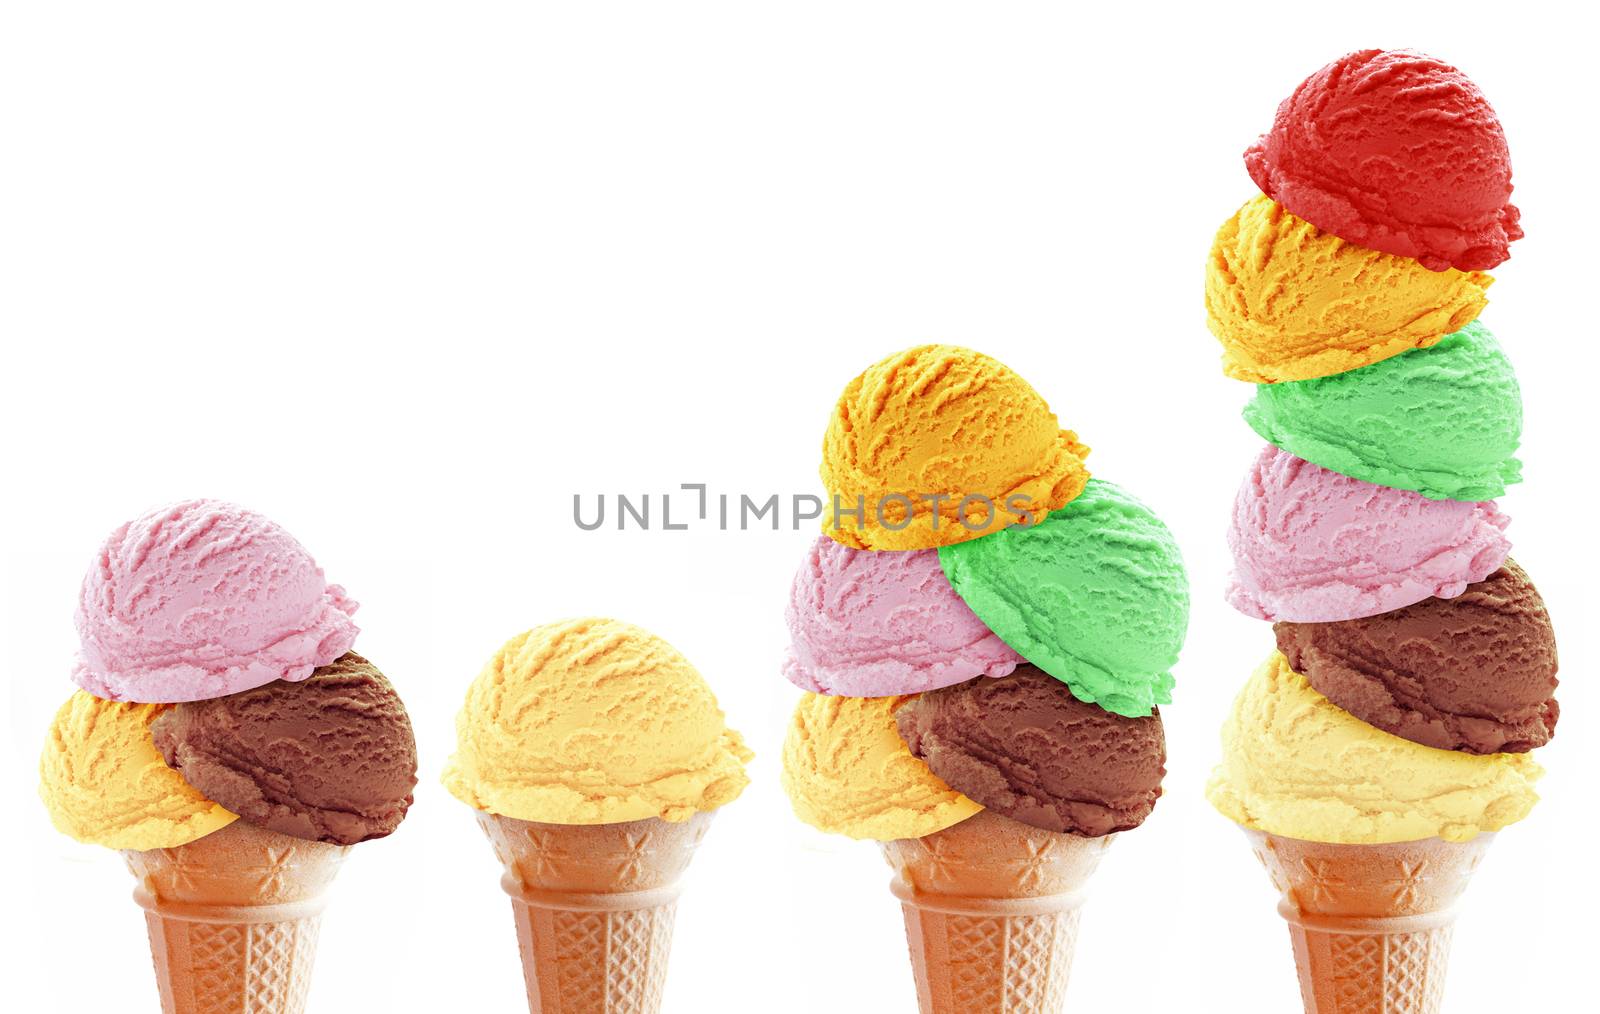 Various icecream scoop flavors in cones closeup